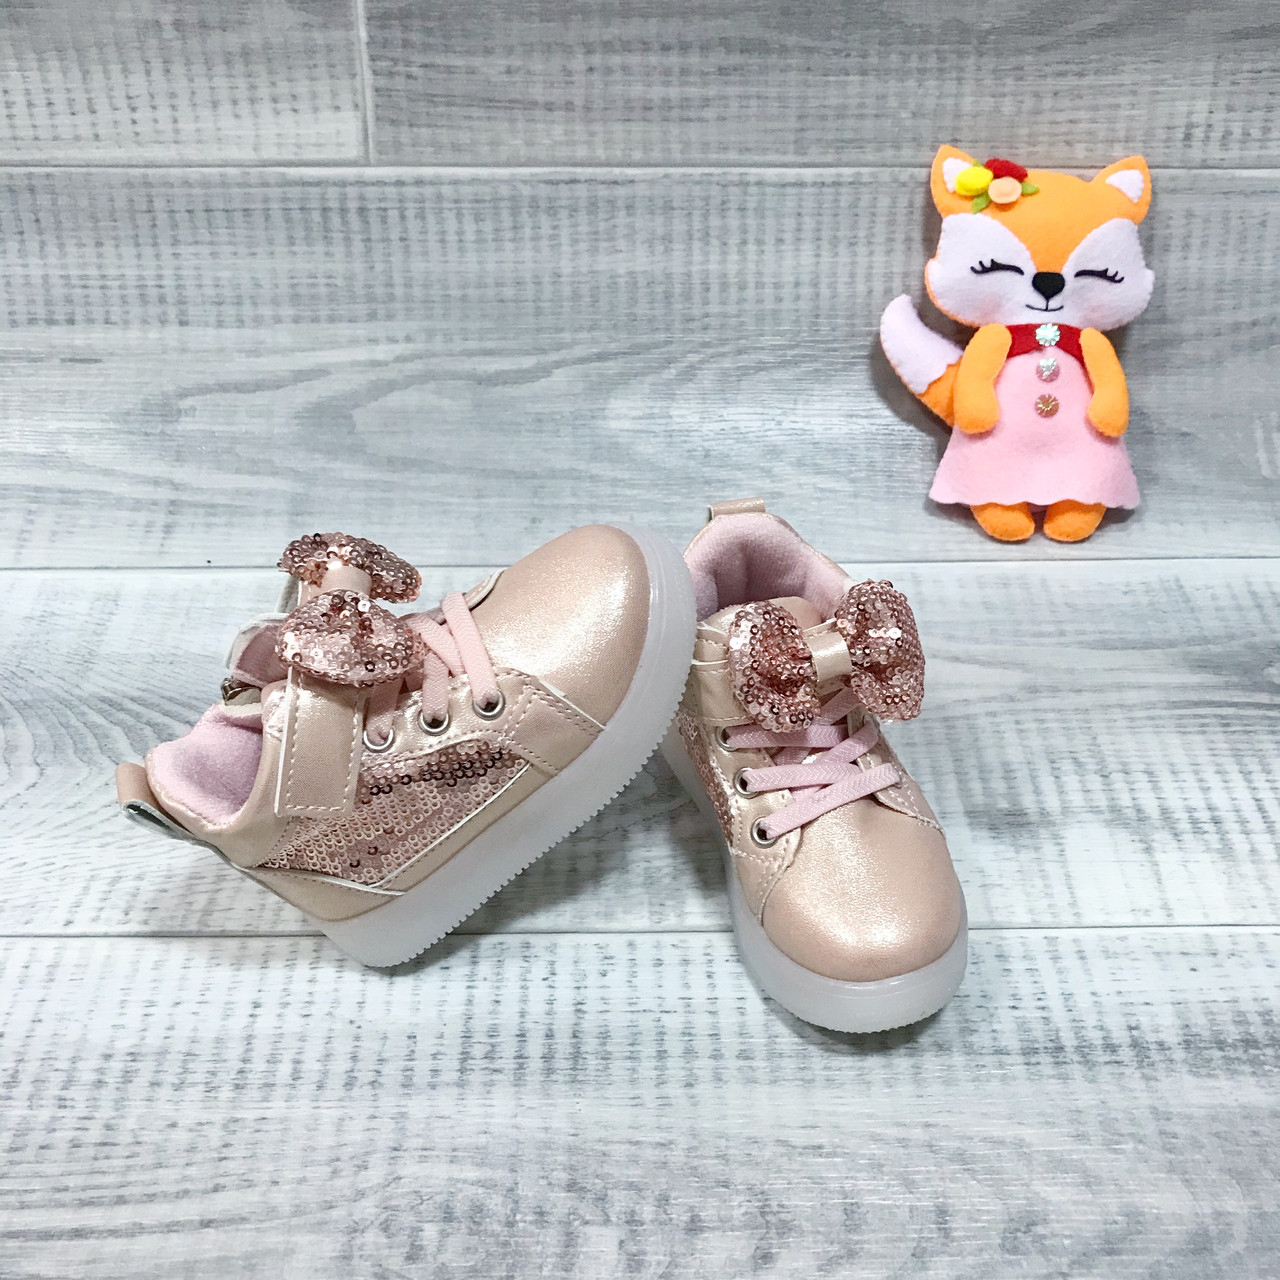 Хайтопи кросівки черевики демісезонні весняні розмір 21 для дівчинки, з мигалками, рожеве золото